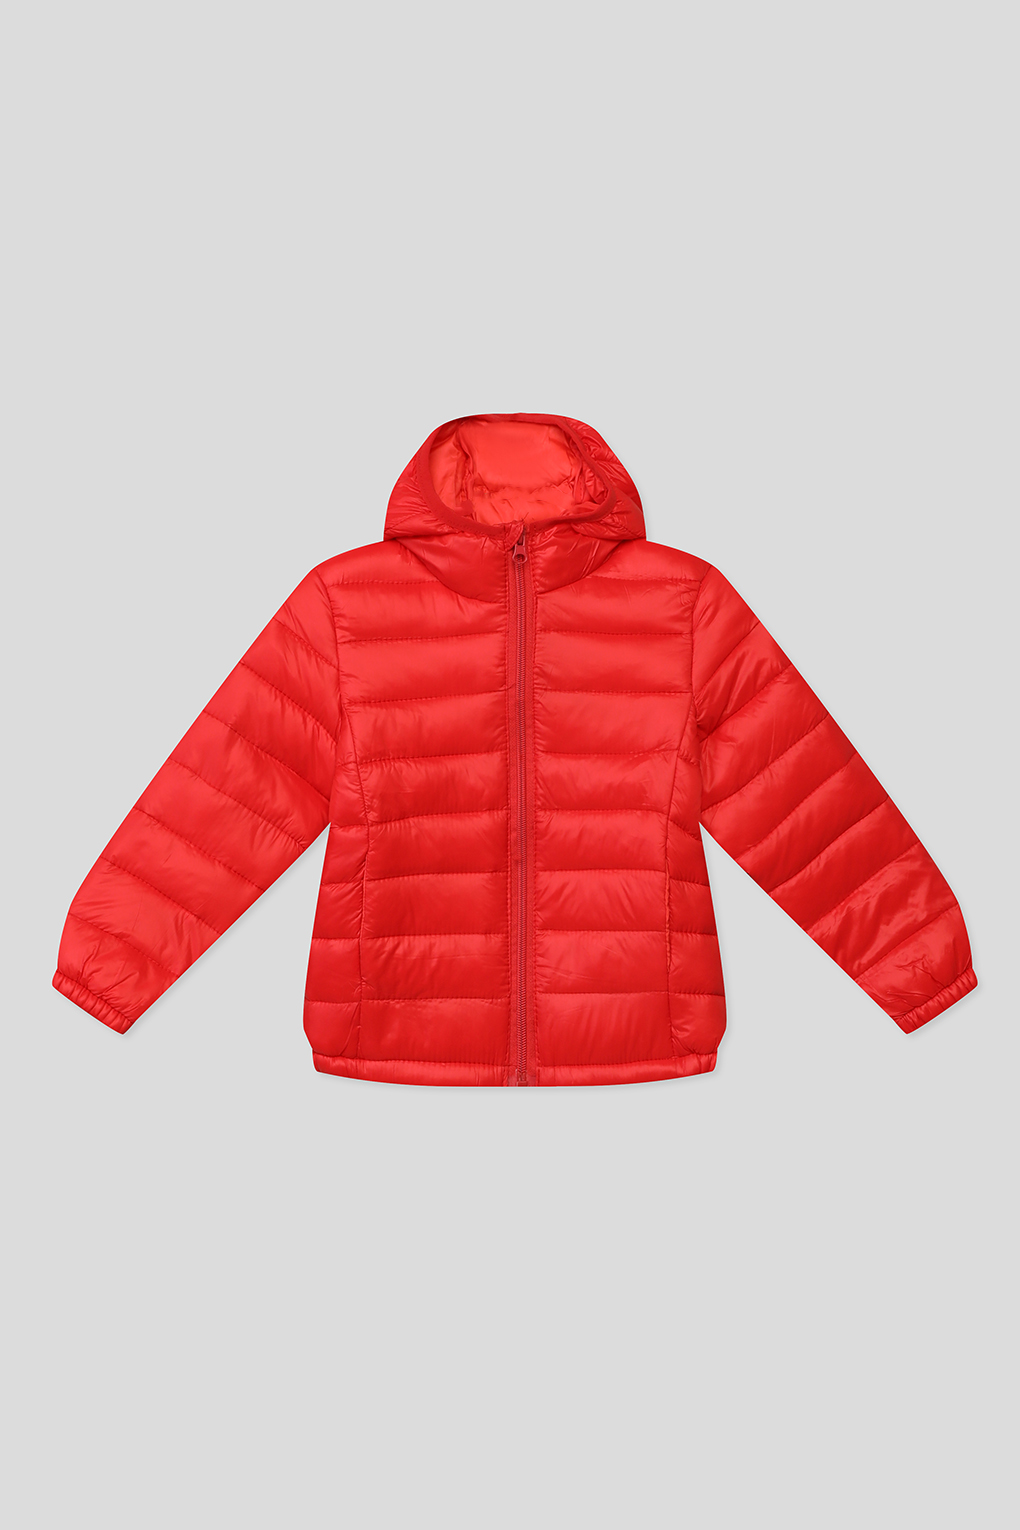 Куртка детская GIOCO G23049253-003 карсный красный, 146